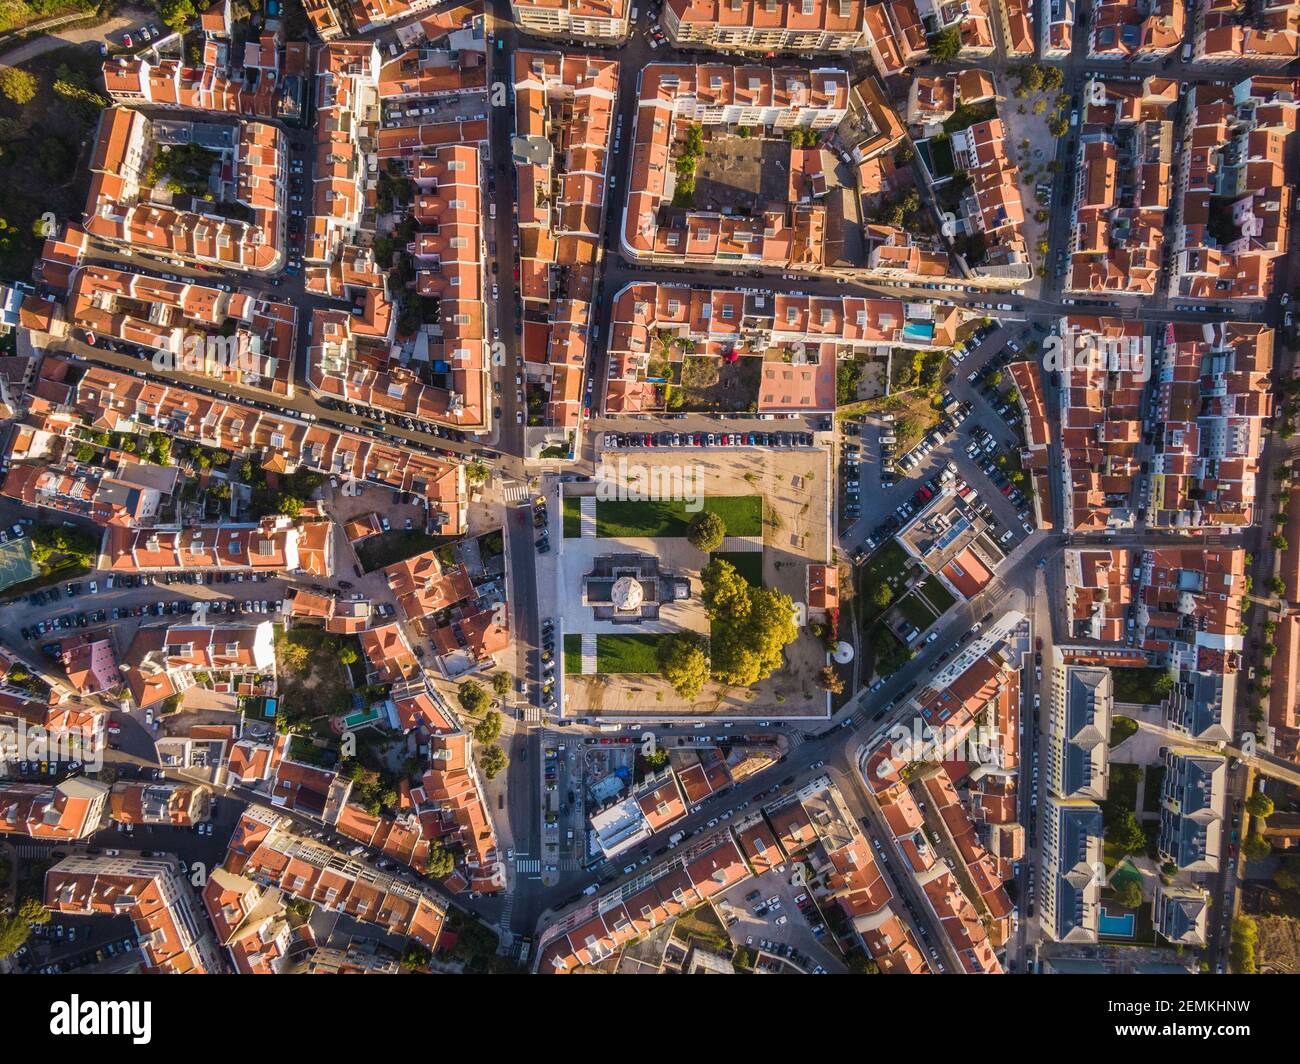 Vue aérienne de haut en bas du quartier résidentiel traditionnel au lever du soleil dans le quartier Belem de Lisbonne, Portugal. Banque D'Images